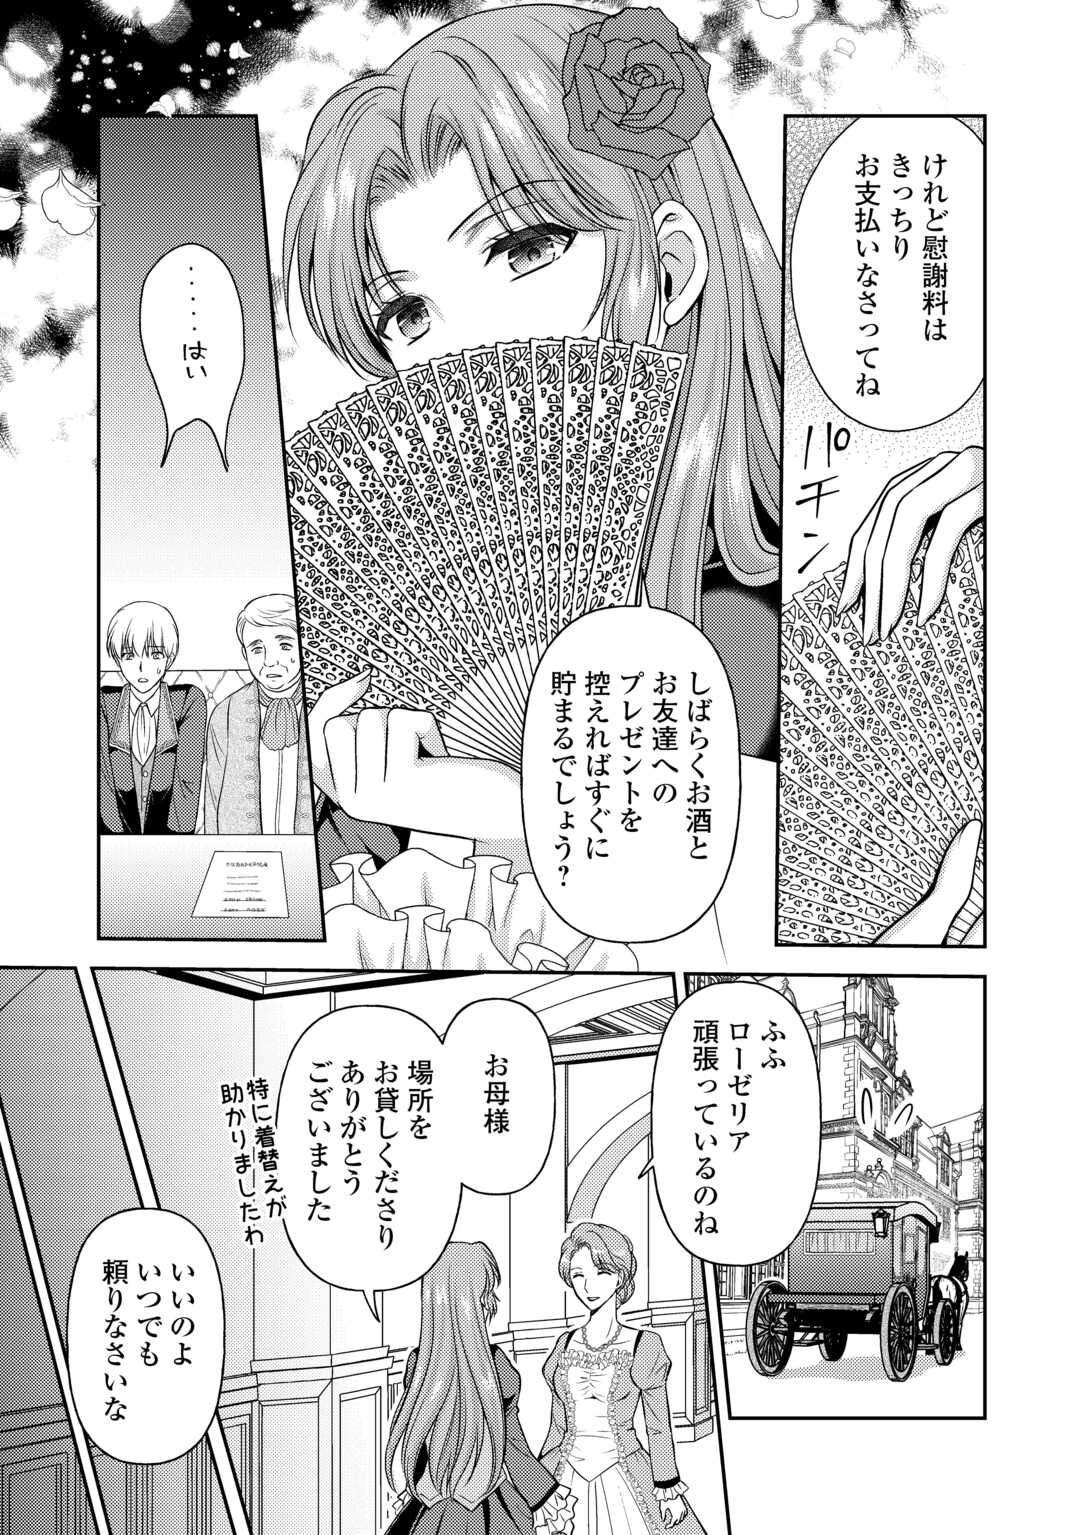 Kawaii Gimai ga Konyakuhaki Saretarashii no de, Ima kara Orei ni Mairimasu. - Chapter 12 - Page 17